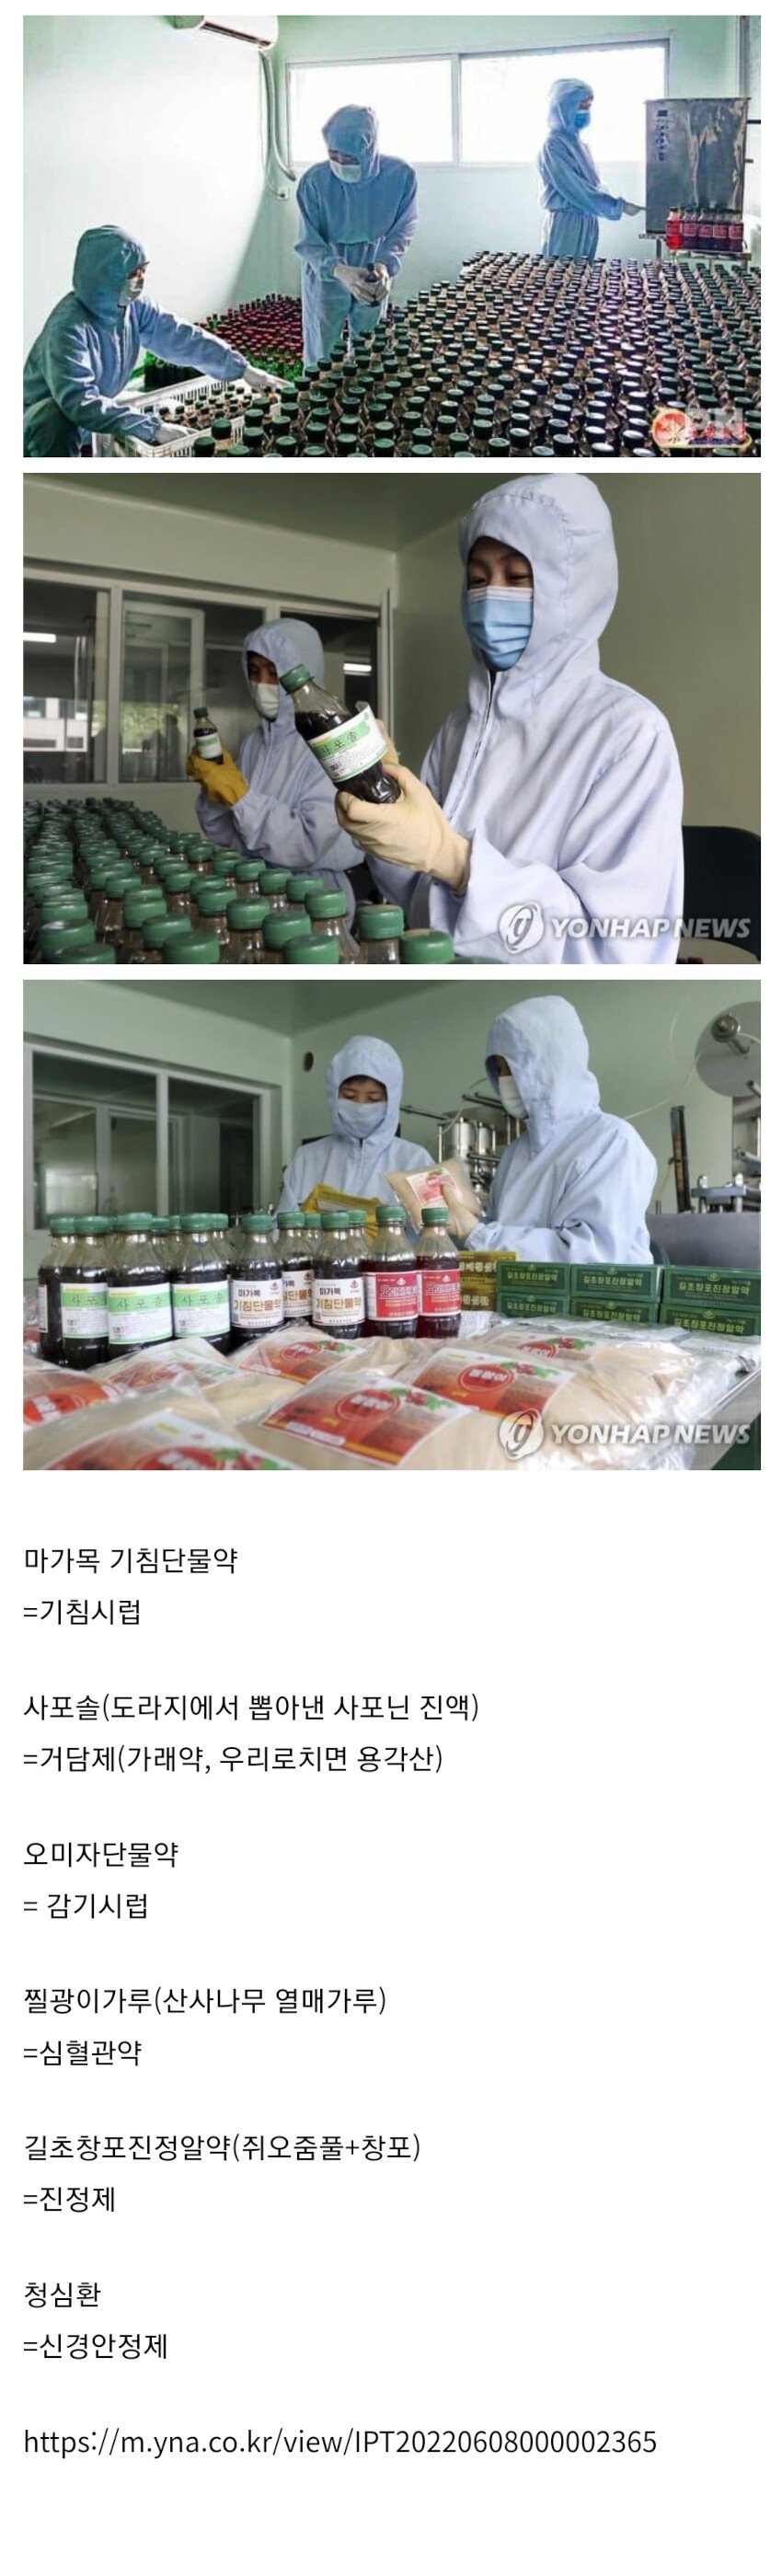 북한에서 우한폐렴 치료에 사용하는 의약품